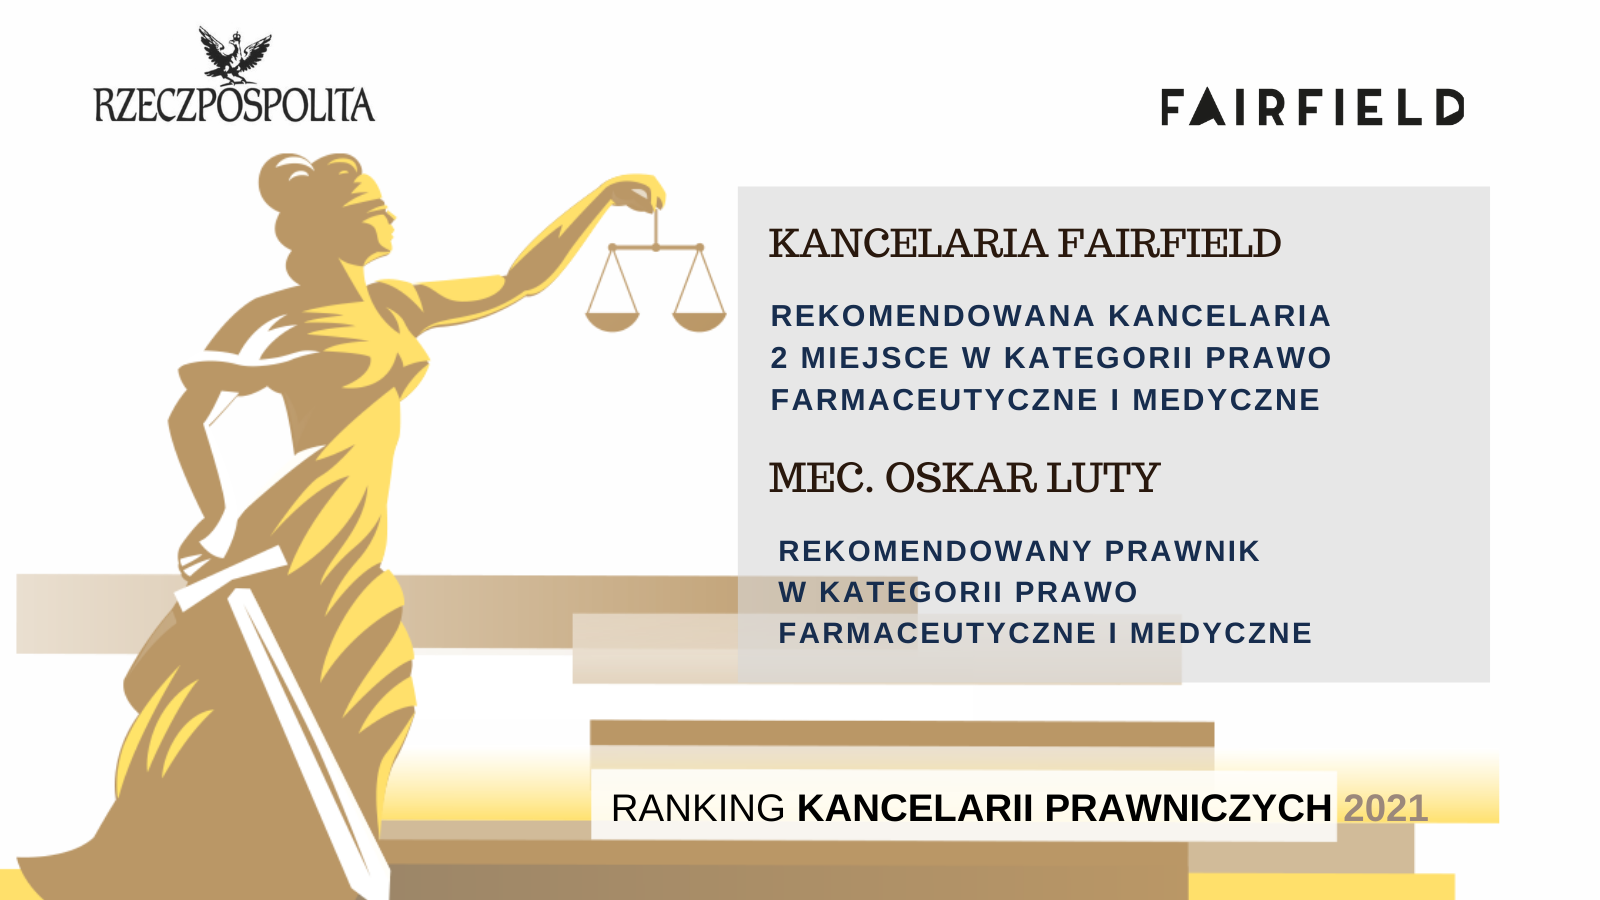 Kancelaria Fairfield wyróżniona w Rankingu Kancelarii Prawniczych Dziennika Rzeczpospolita 2021